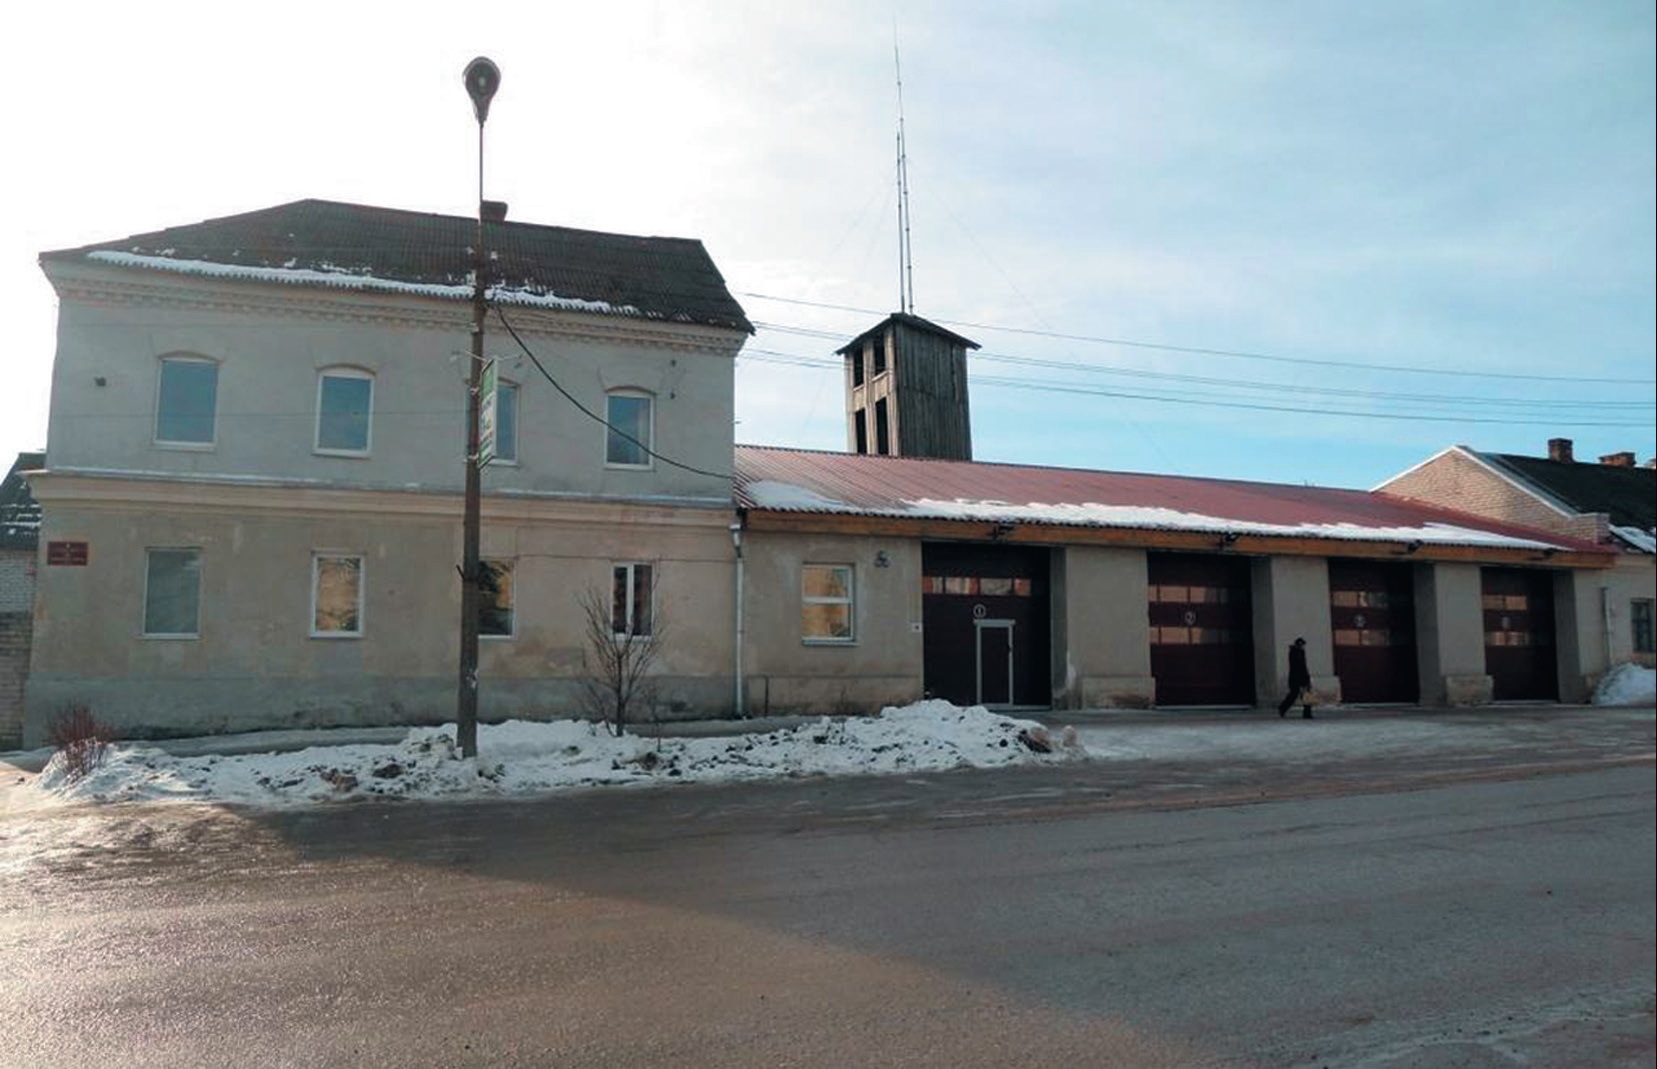 Склад Вереятова и здание пожарного депо (Опочка)